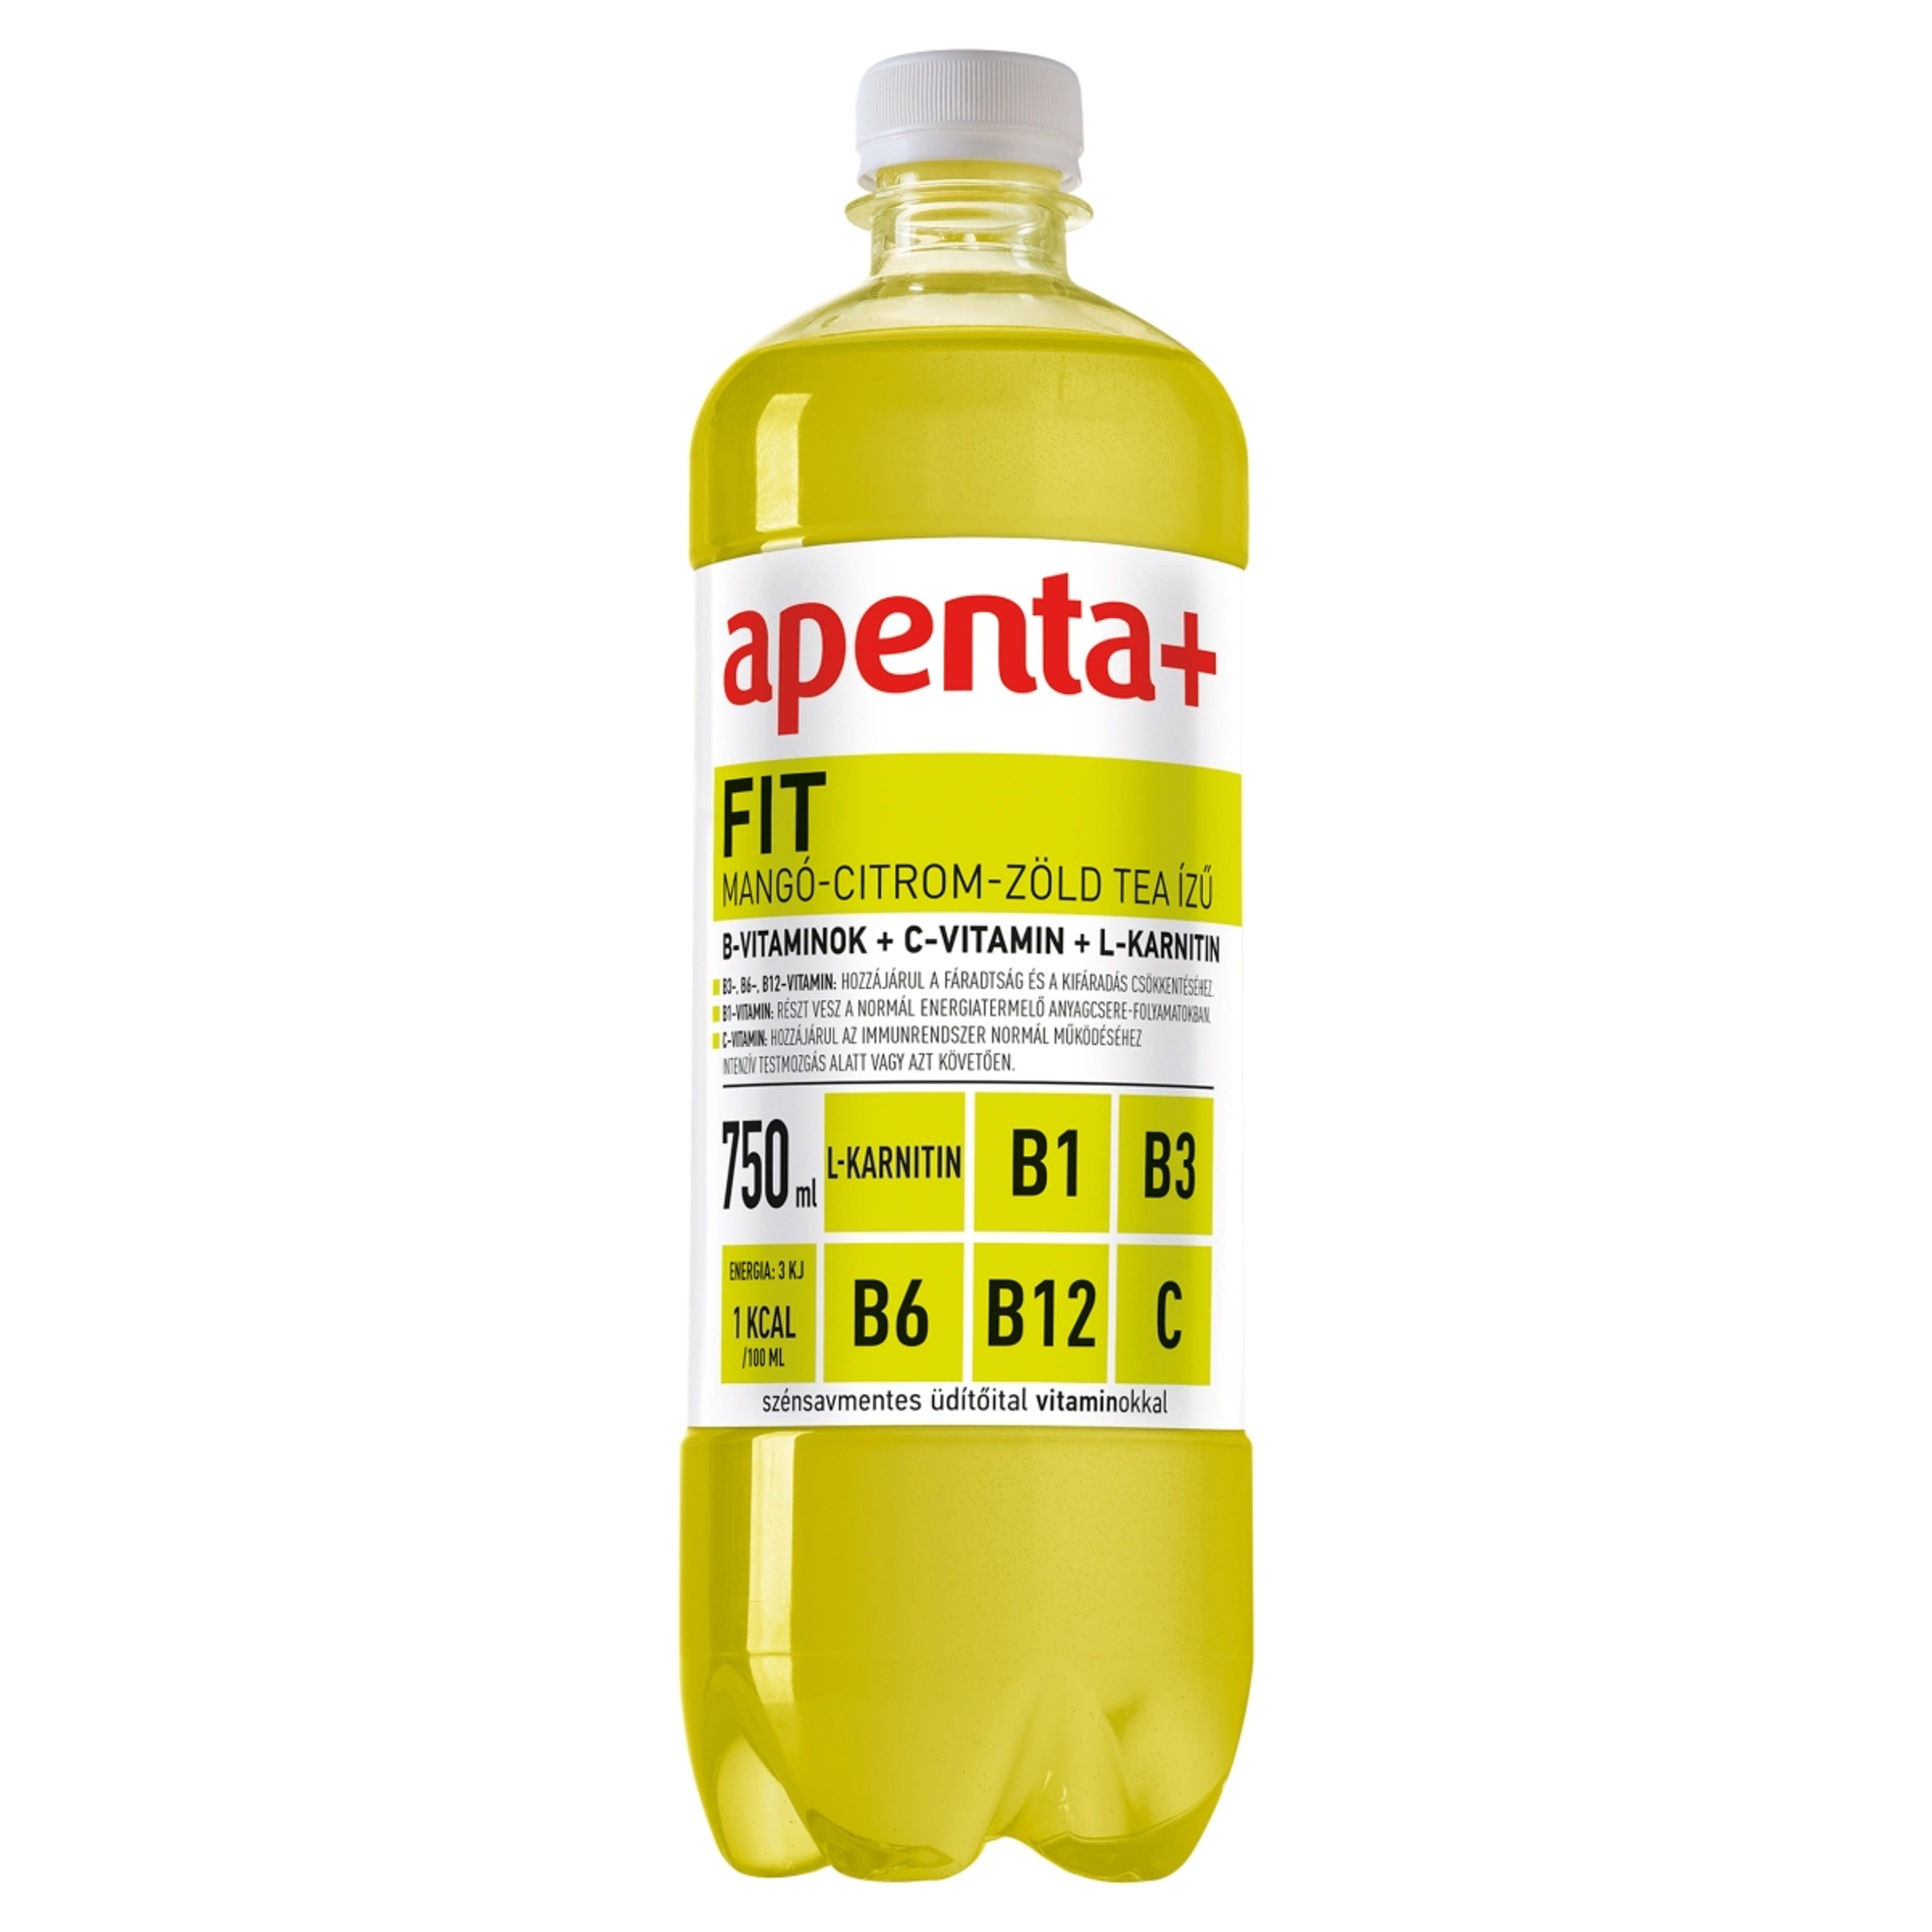 Apenta + fit - 750 ml-1